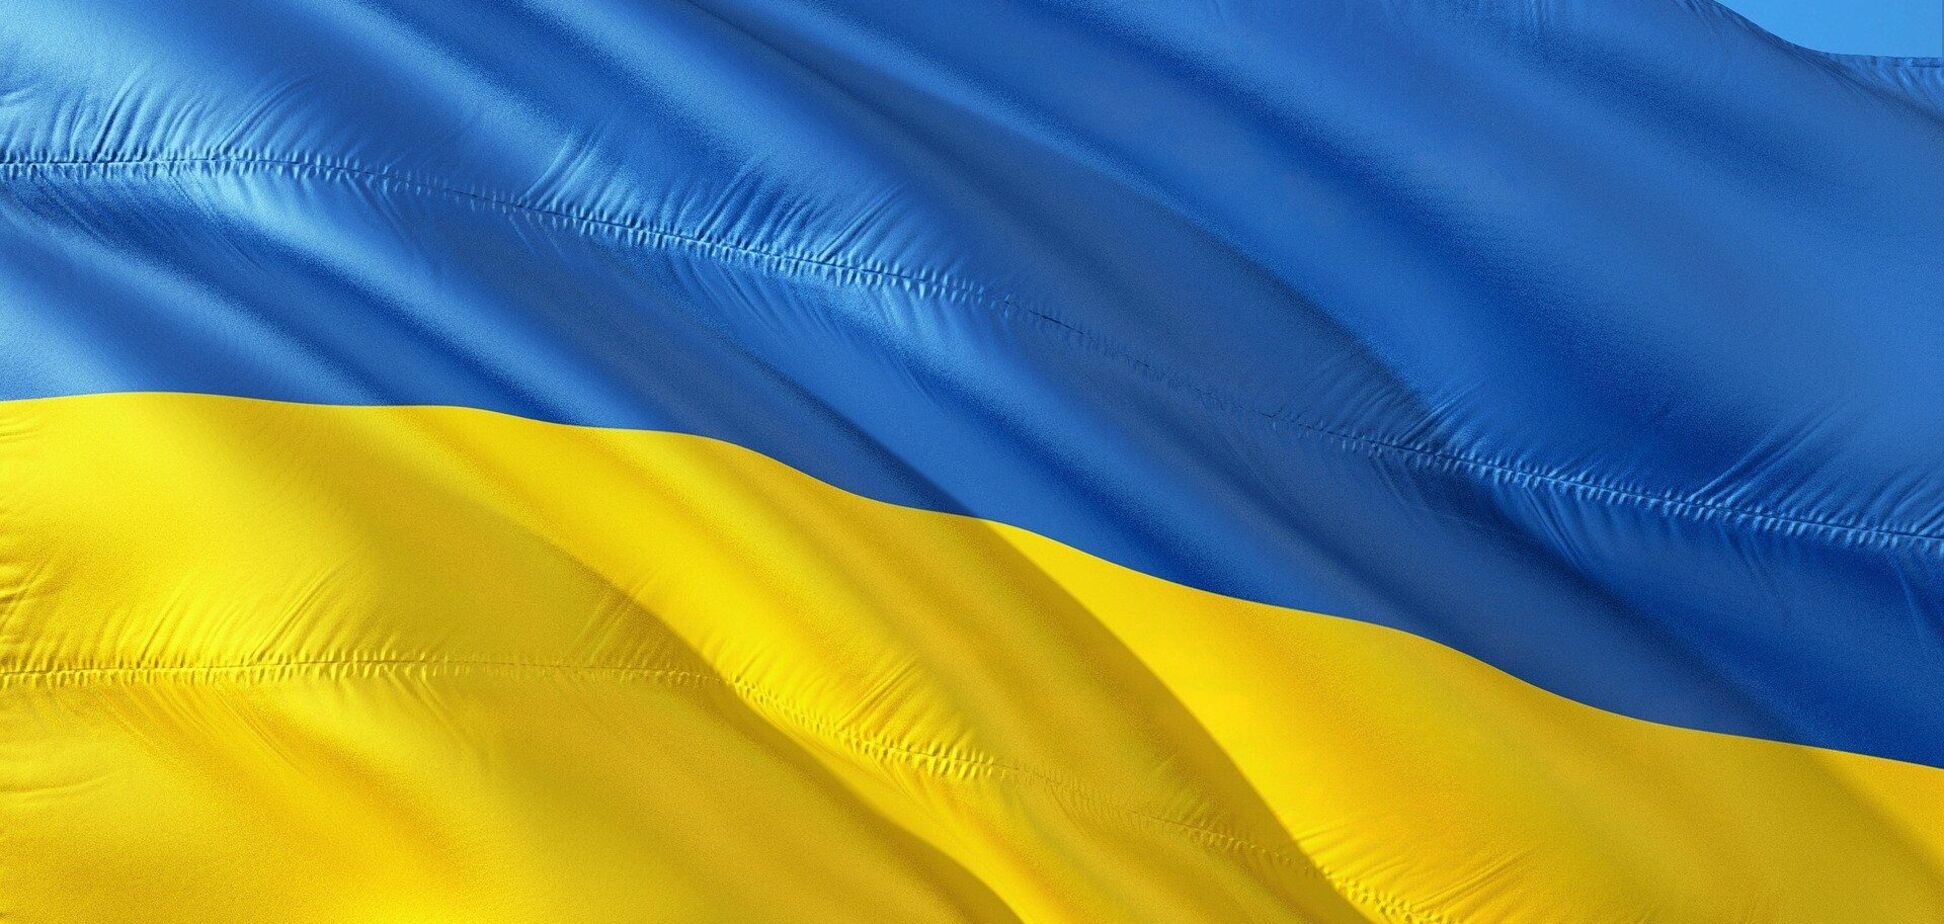 К 30-летию Независимости Украины потратят почти 200 млн грн на гигантские флагштоки